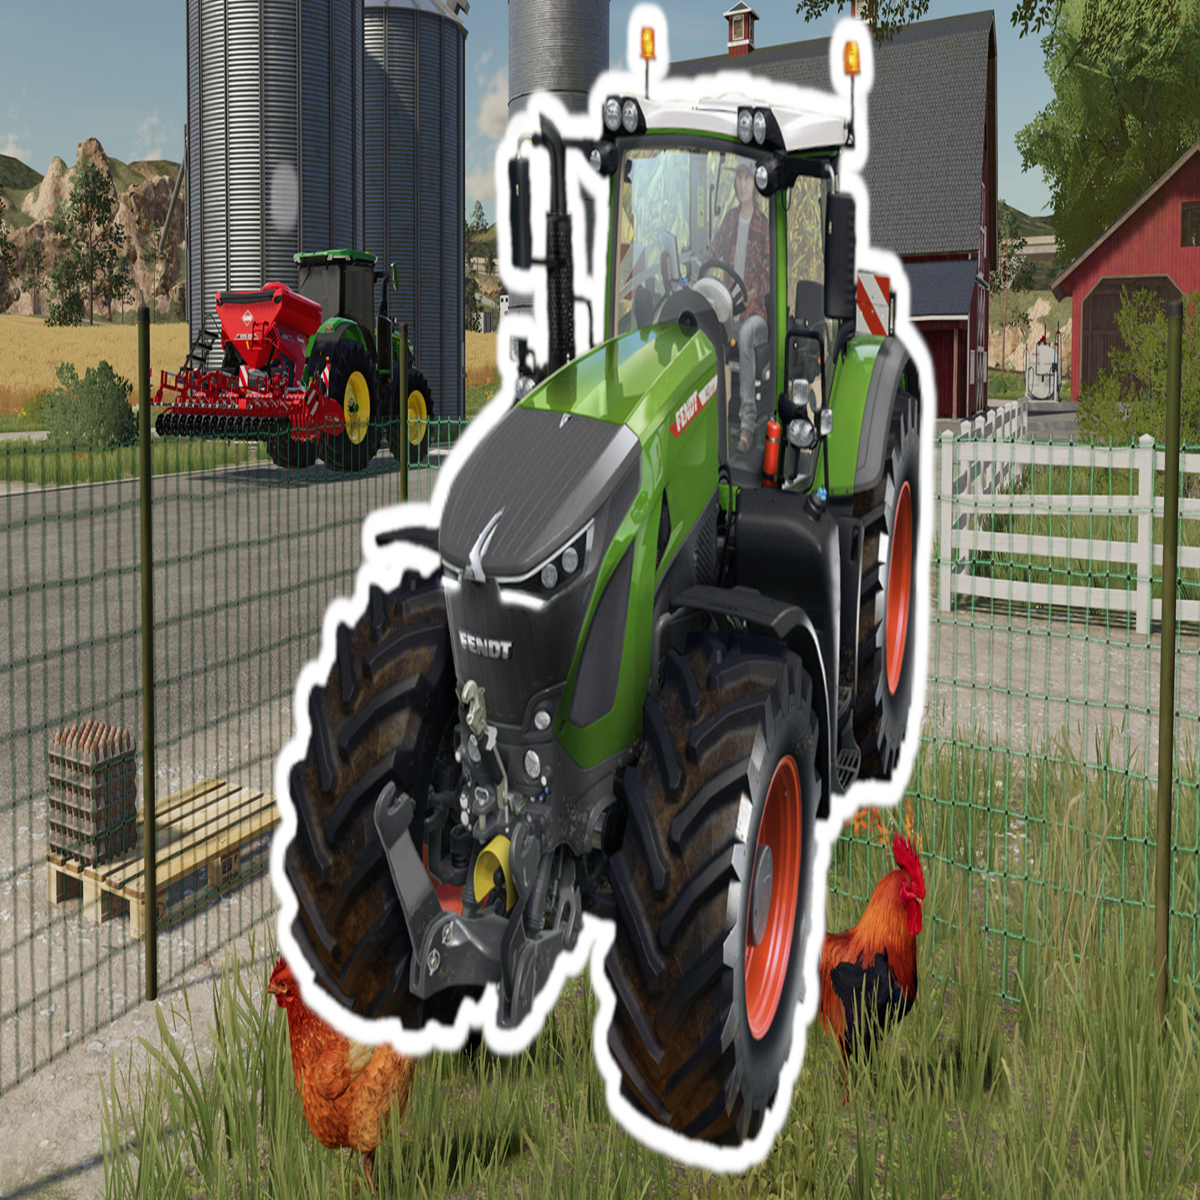 Der Landwirtschafts-Simulator 23 ist jetzt für Mobile & Switch erhältlich!